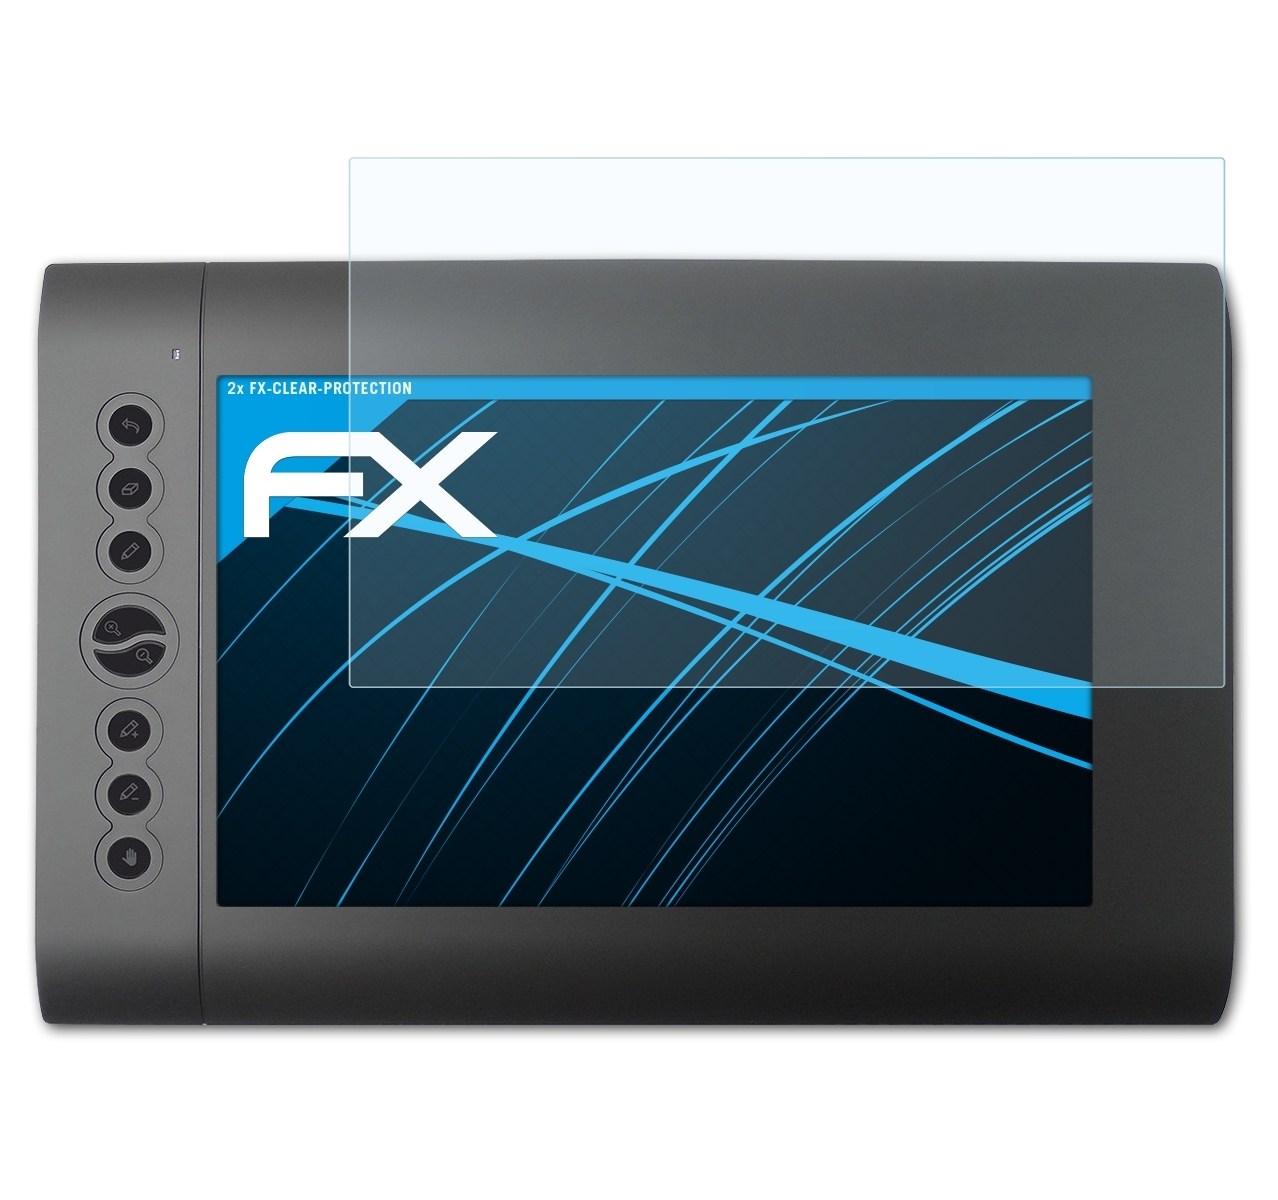 FX-Clear 2x Huion ATFOLIX H610Pro) Displayschutz(für